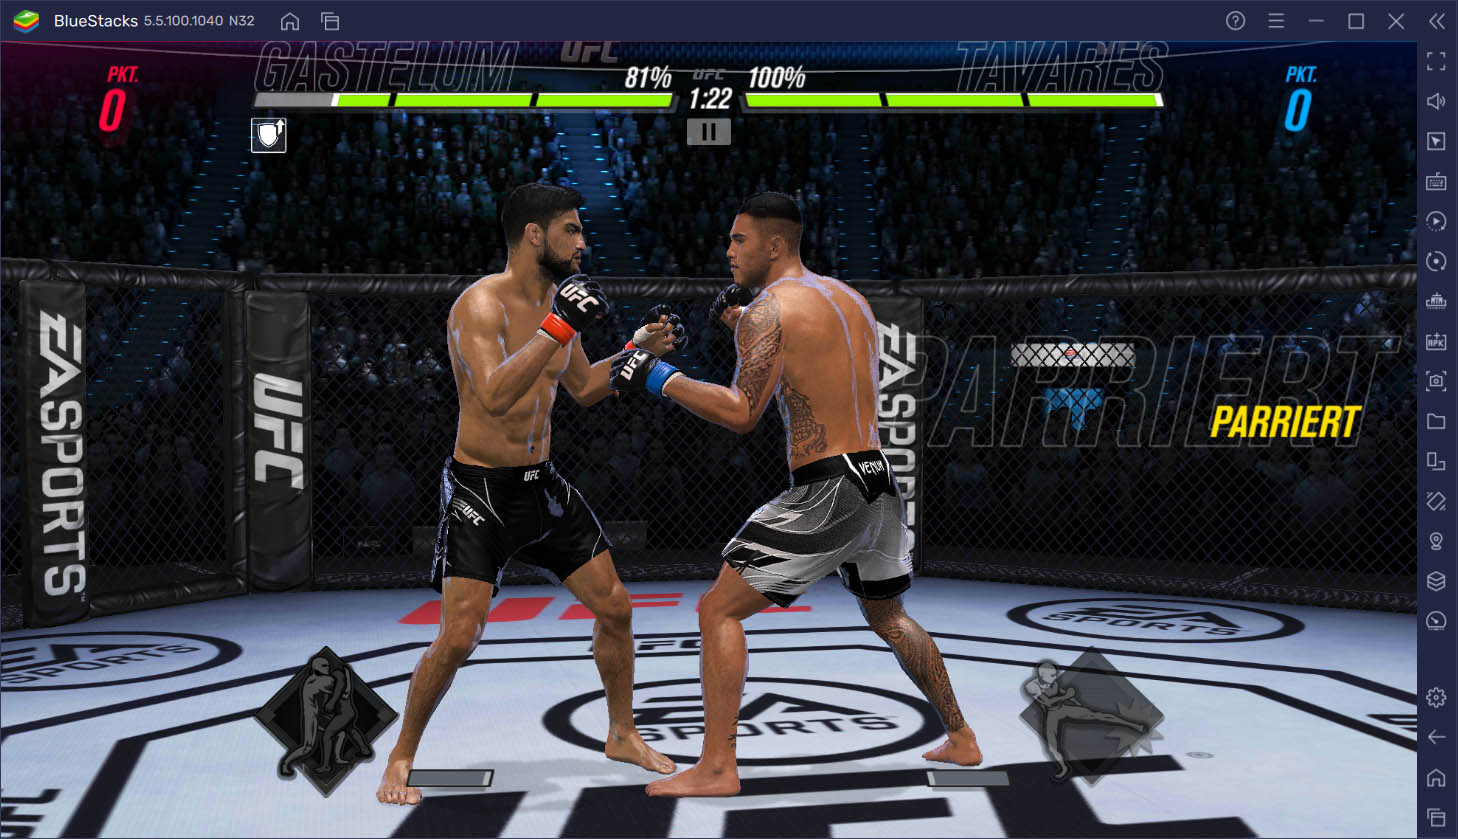 UFC Mobile 2 auf dem PC – Tipps und Tricks, um Matches zu gewinnen und KOs zu erzielen